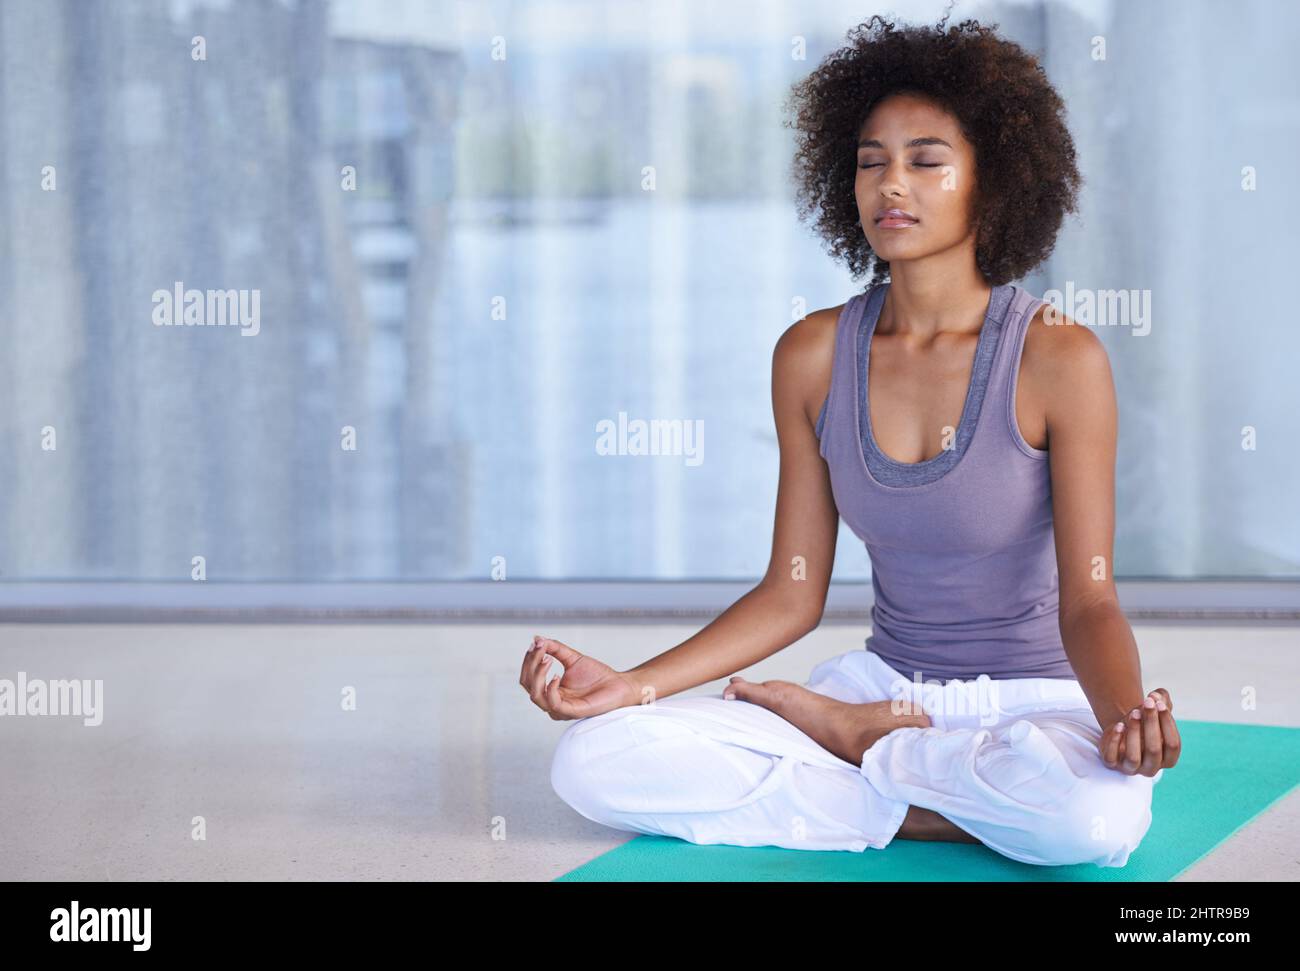 Innere Ruhe finden. Aufnahme einer attraktiven jungen Frau, die auf einer Übungsmatte meditiert. Stockfoto